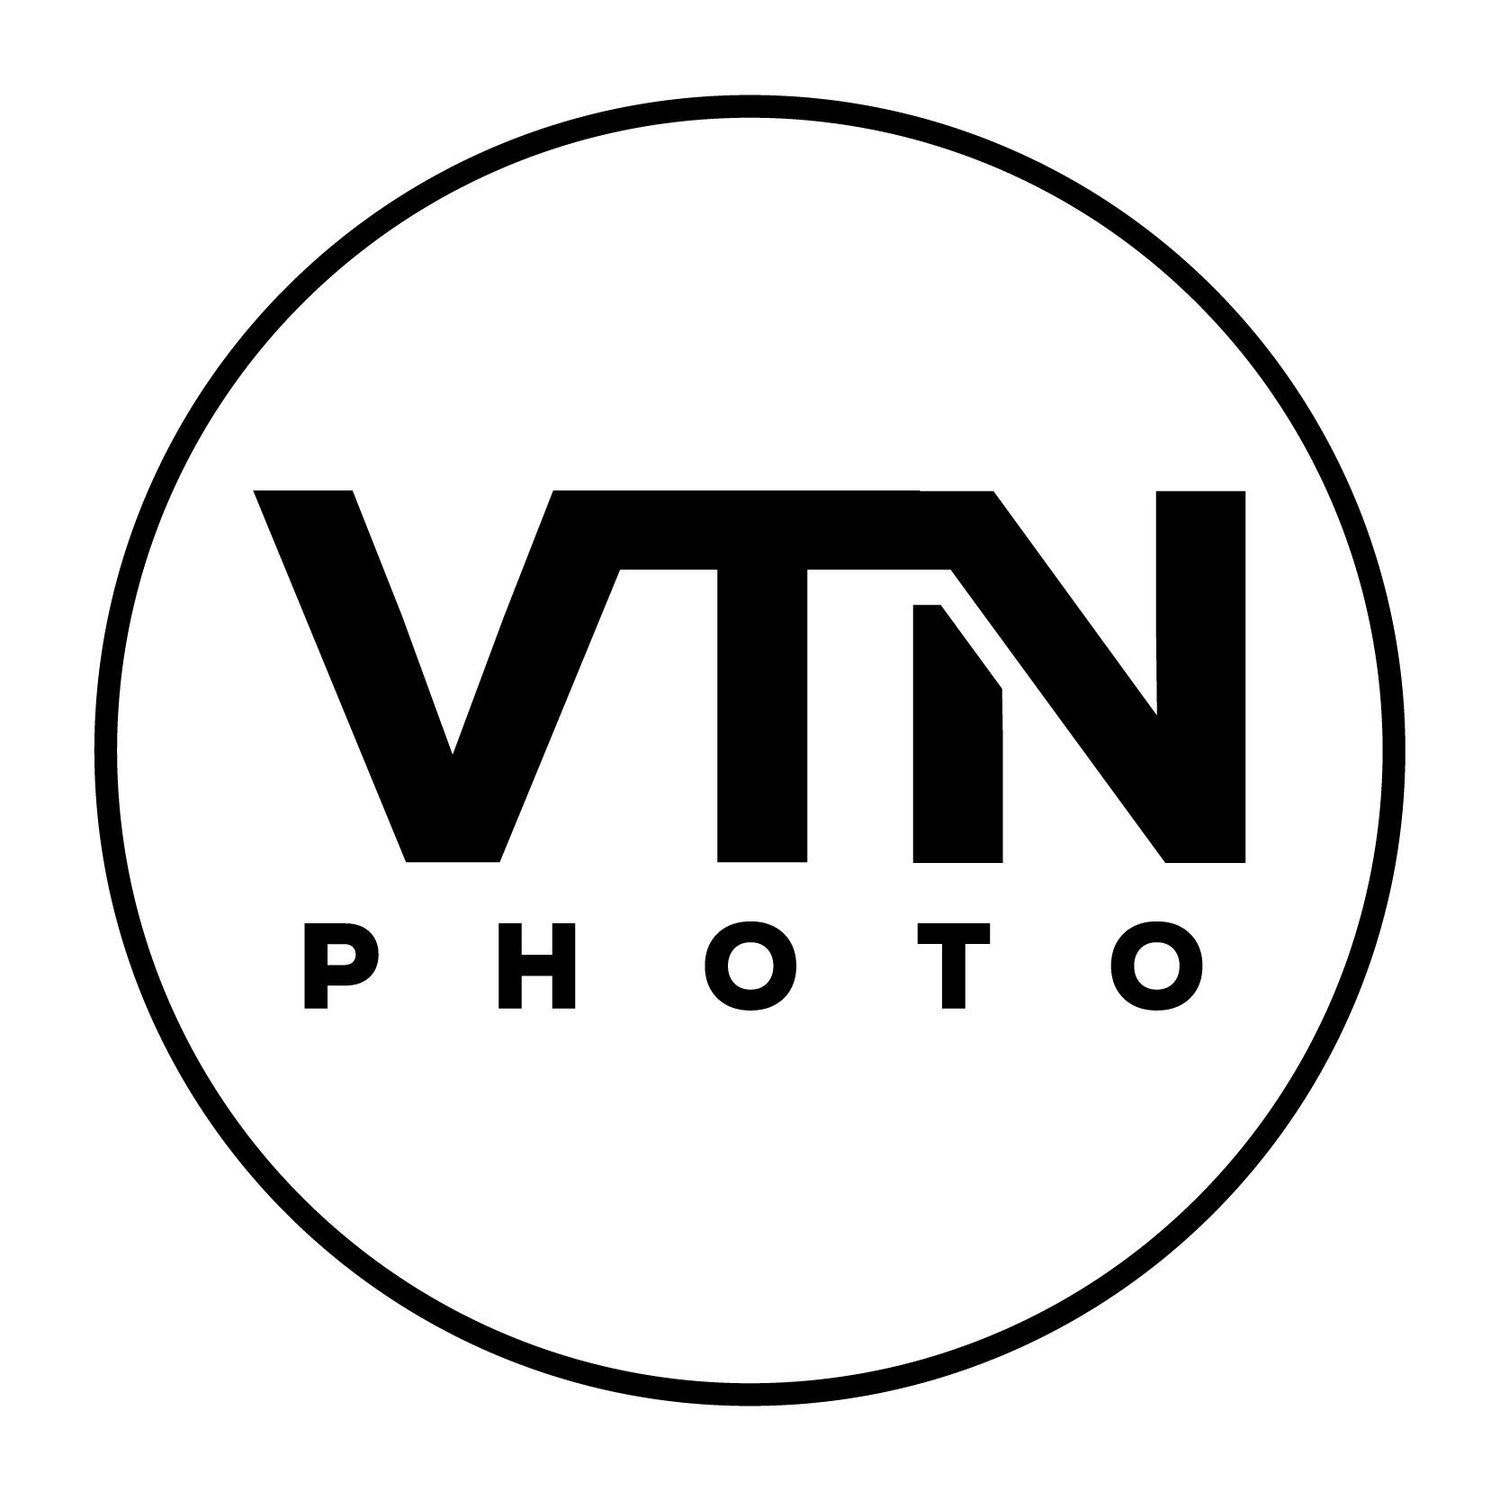 VTN Photo